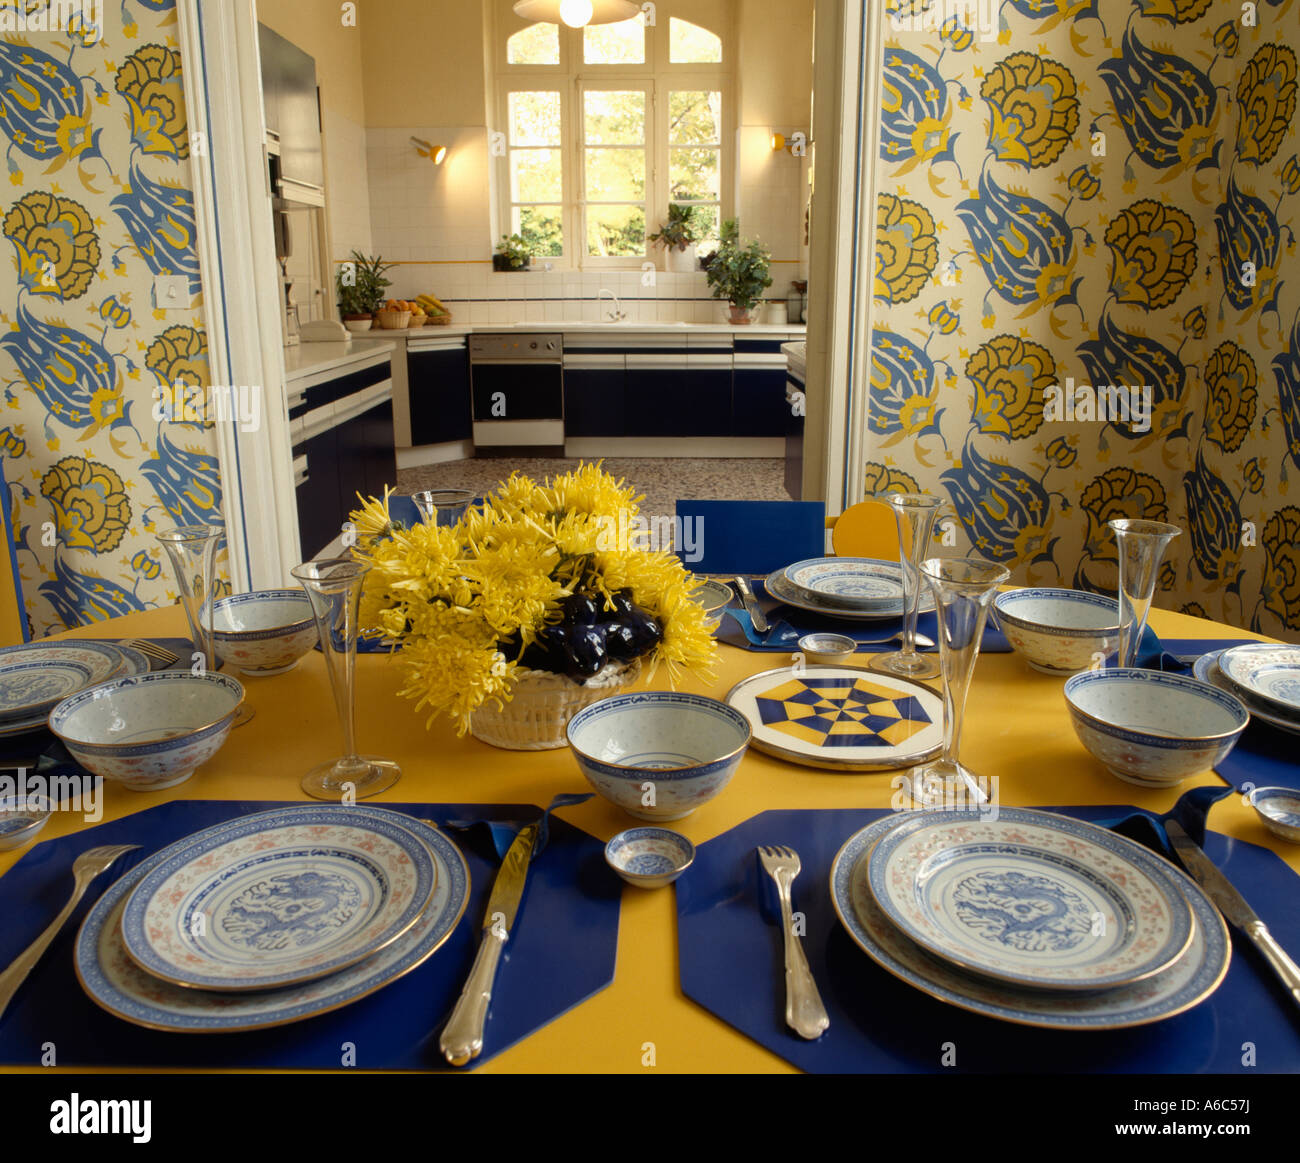 Blaue Servietten und Geschirr auf gelbe Tischdecke im Esszimmer mit gelb  und blau gemusterten Tapeten und offene Tür zur Küche Stockfotografie -  Alamy